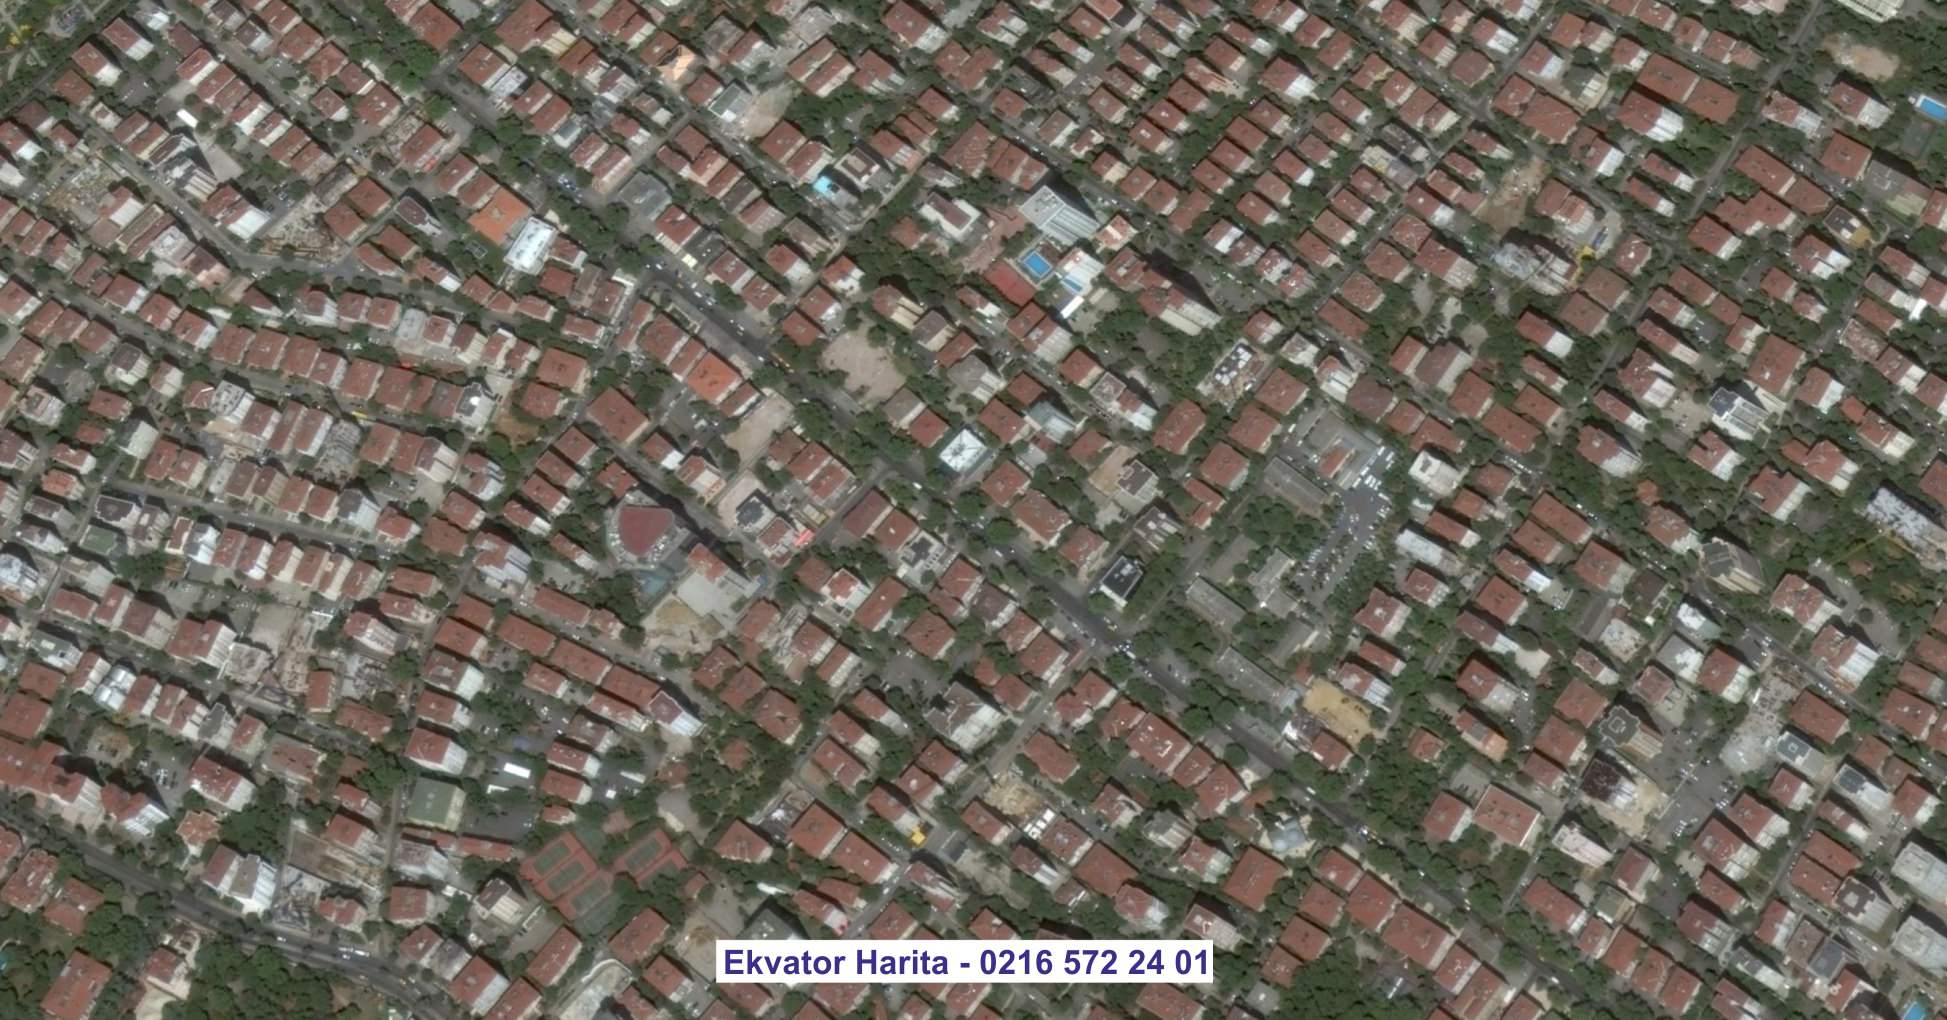 Sakarya Uydu Görüntüsü Örnek Fotoğrafı